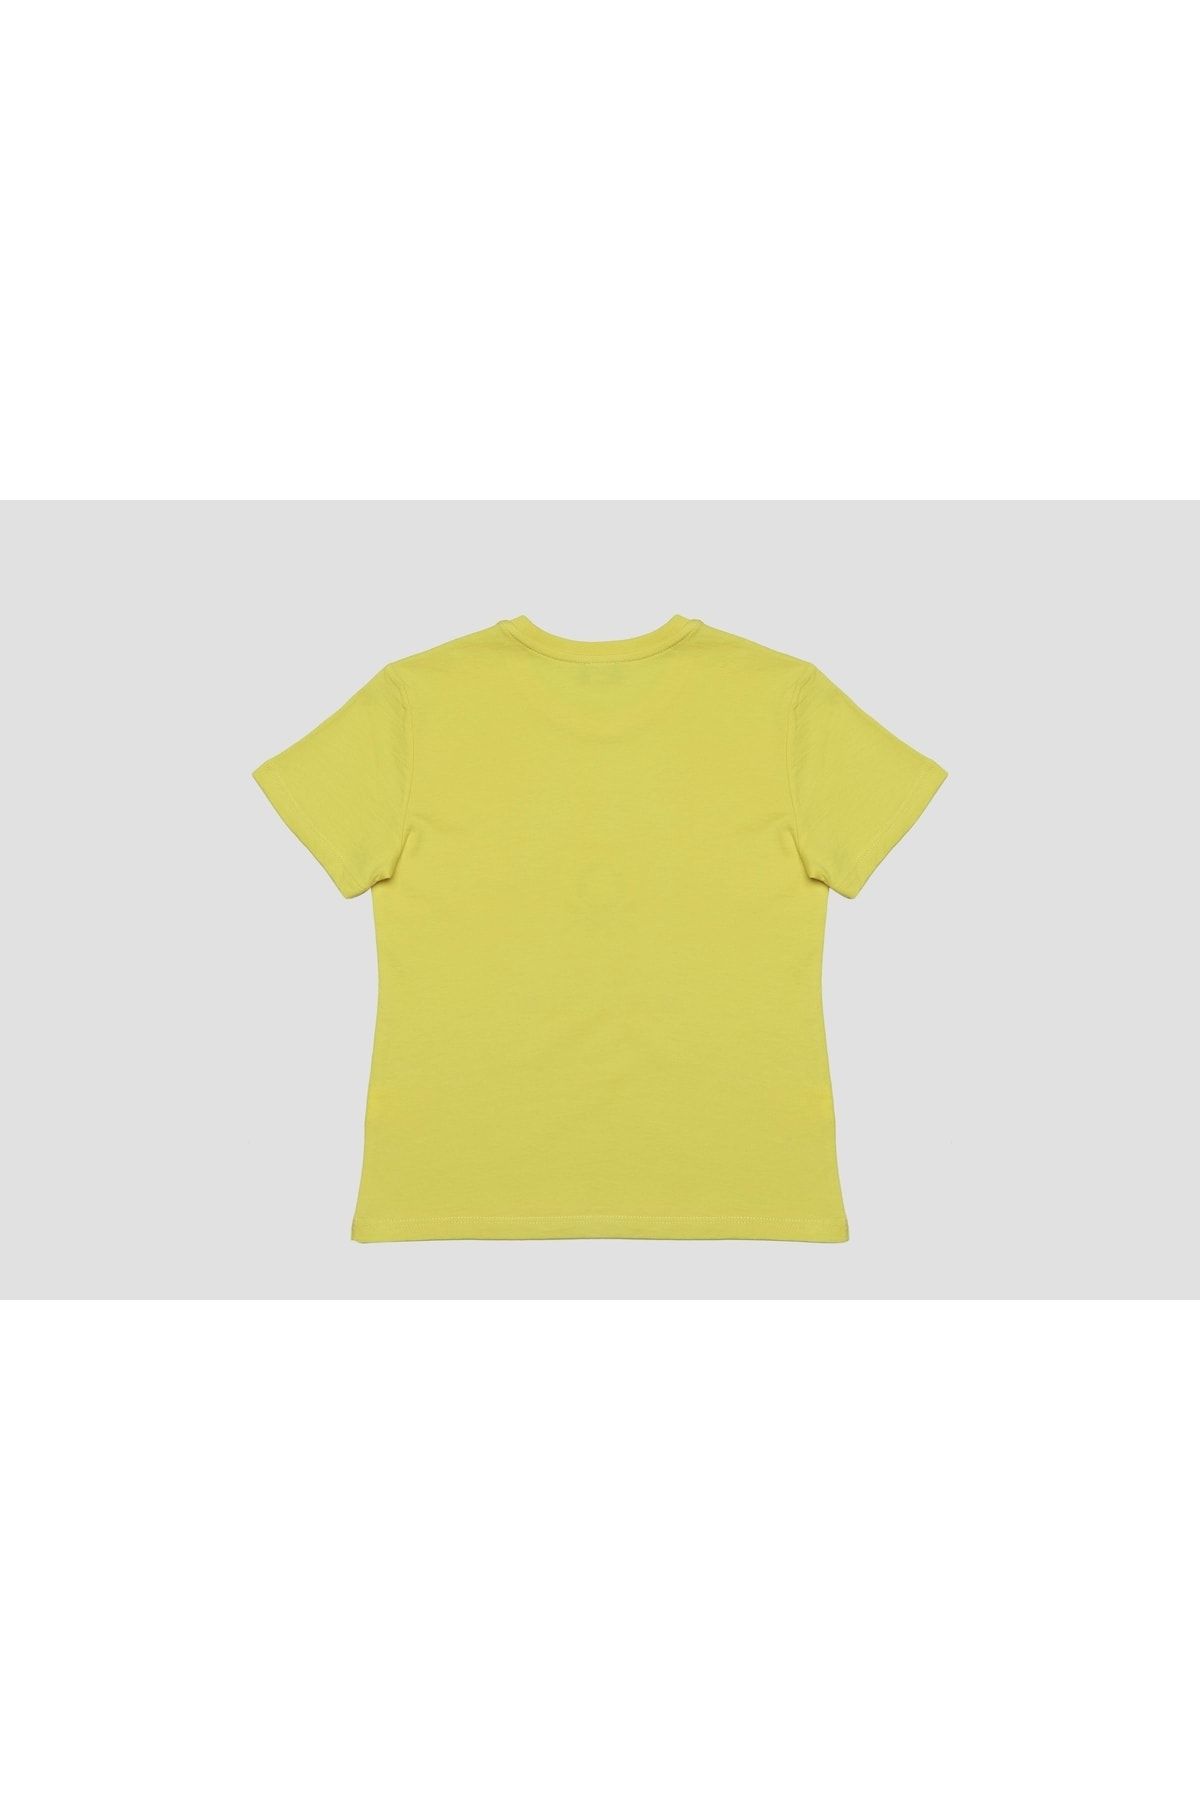 Benetton Kız Çocuk Sarı T-shirt